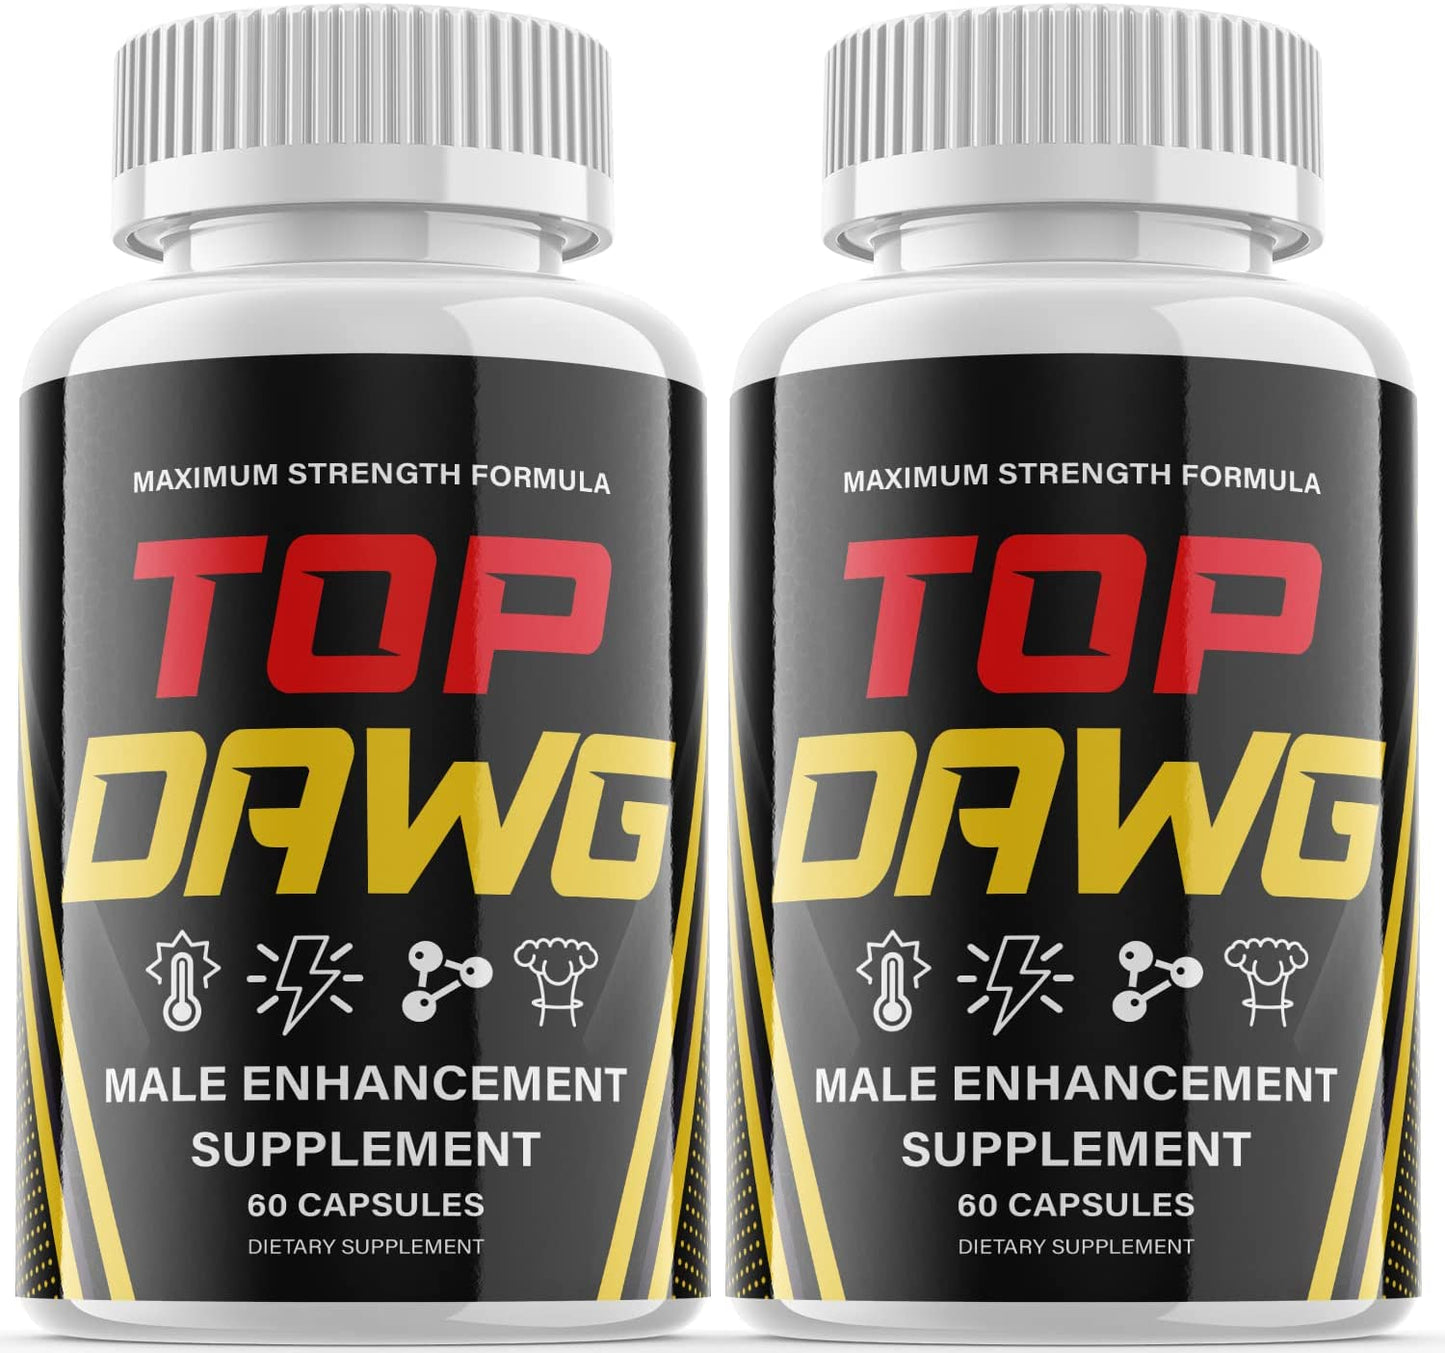 Top Dawg Male Enhancement Pills